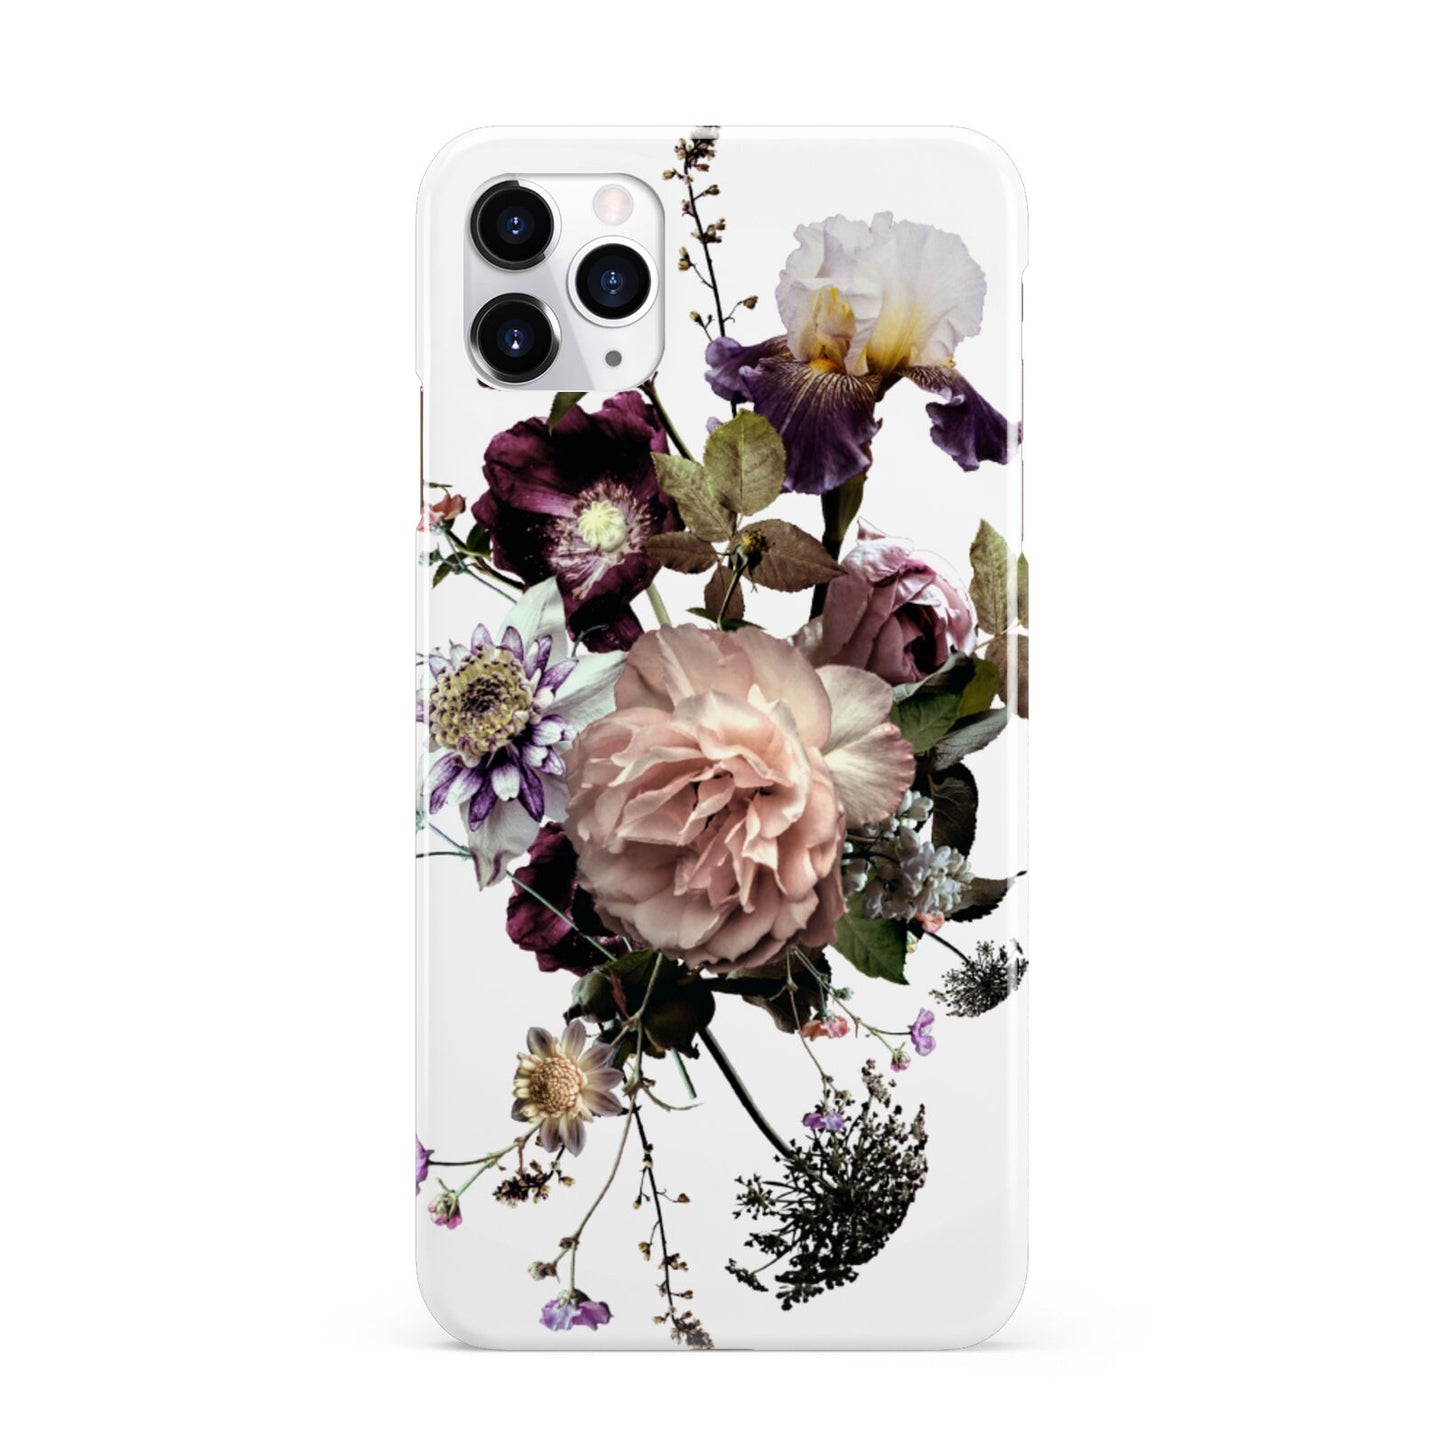 Vintage Flowers iPhone 11 Pro Max 3D Snap Case